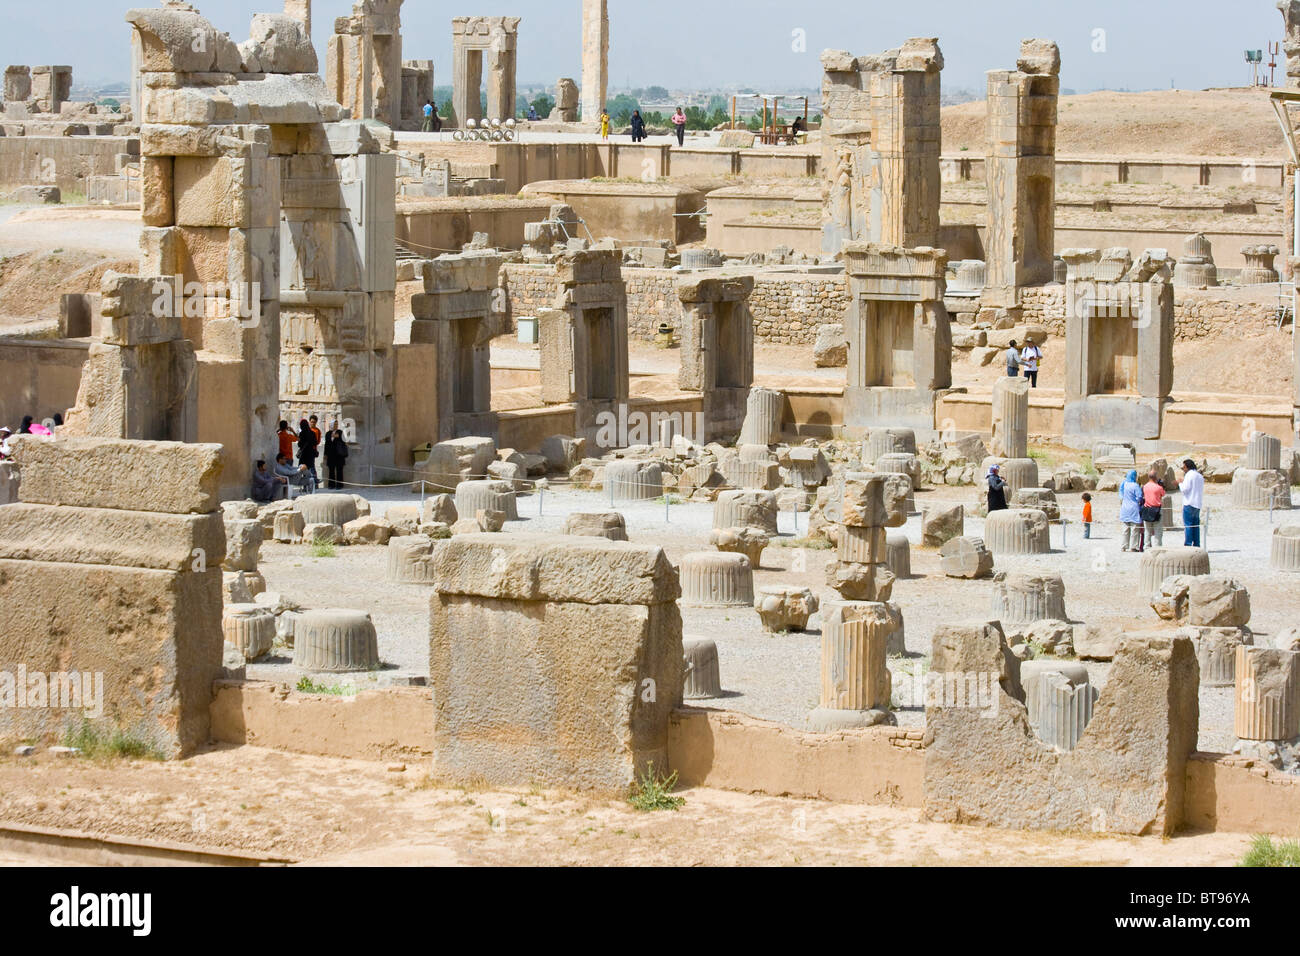 Ancient Persian Ruins of Persepolis in Iran Stock Photo